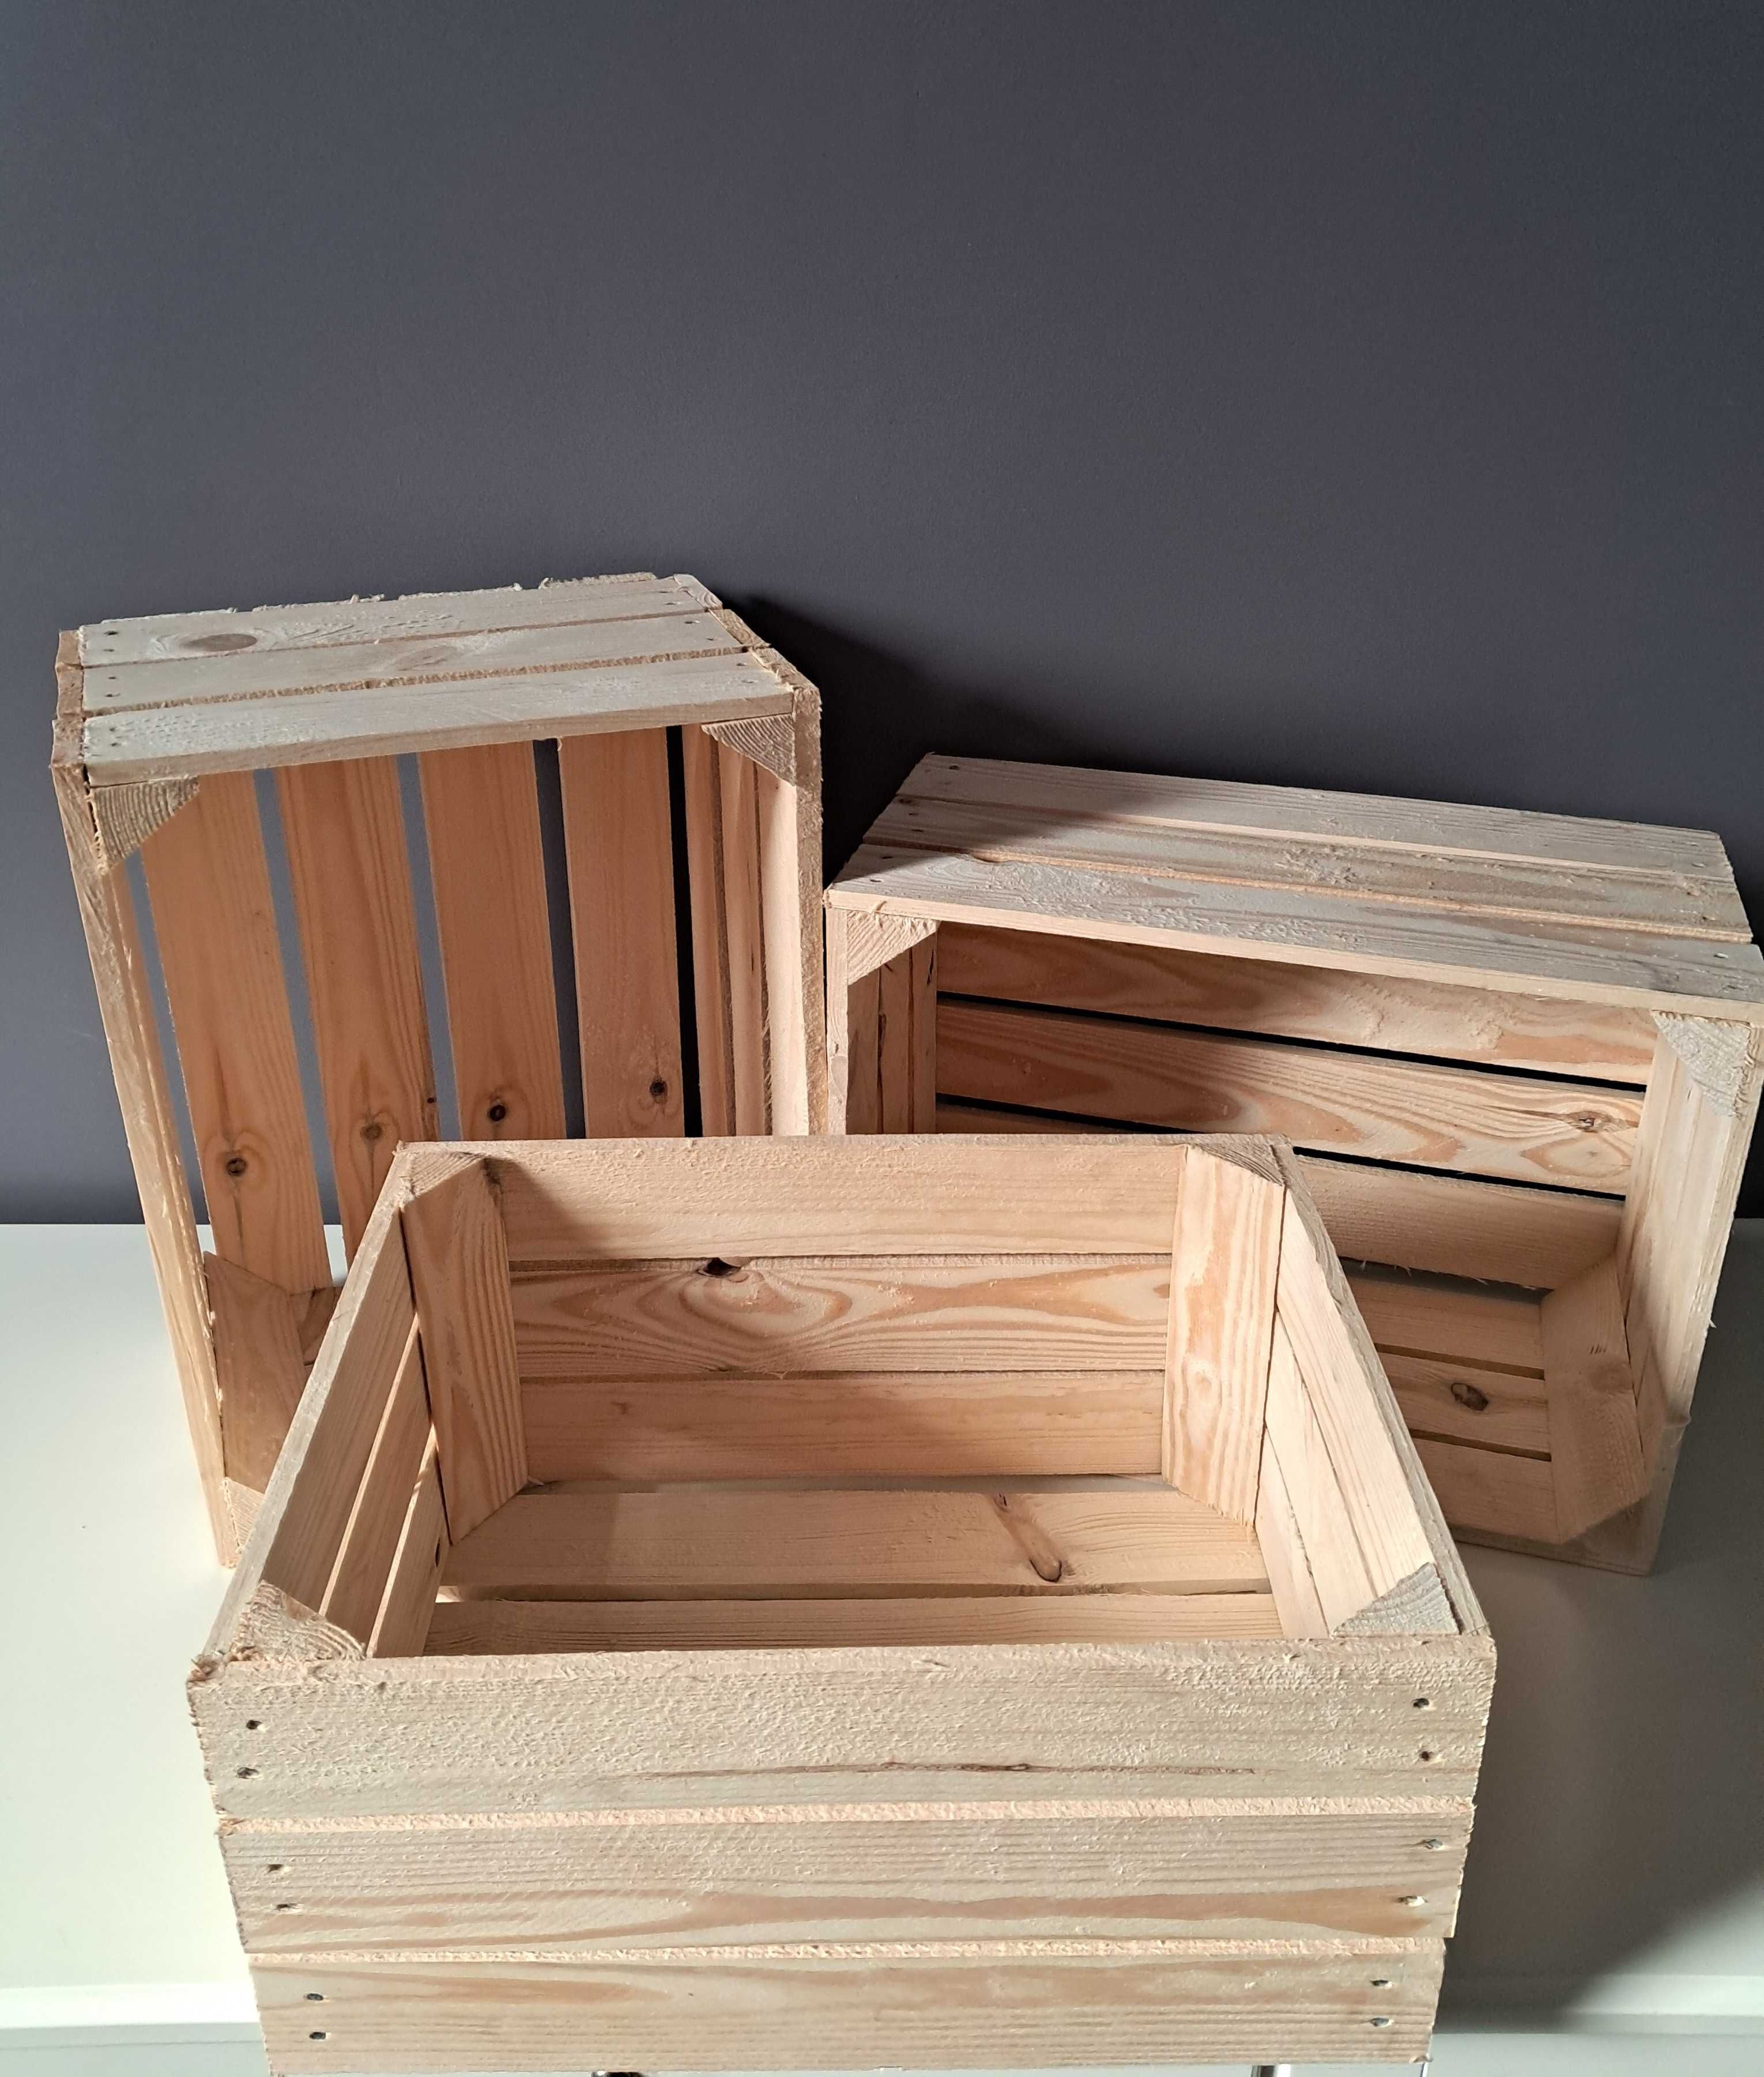 Skrzynka drewniana 40x30x20 trzy sztuki   nowe solidne z przesyłką OLX